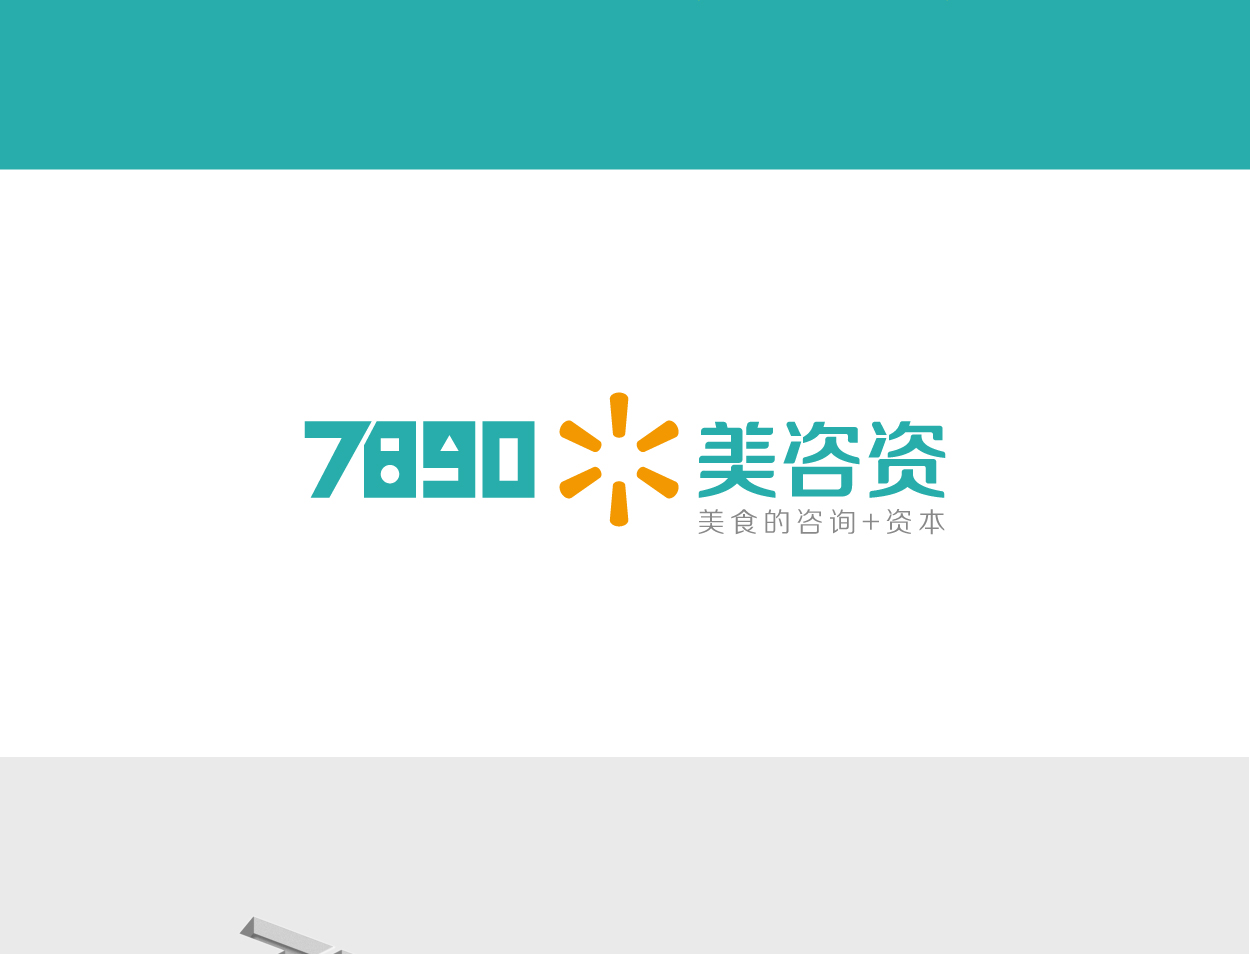 深圳7890+美咨资标志设计-商标制作